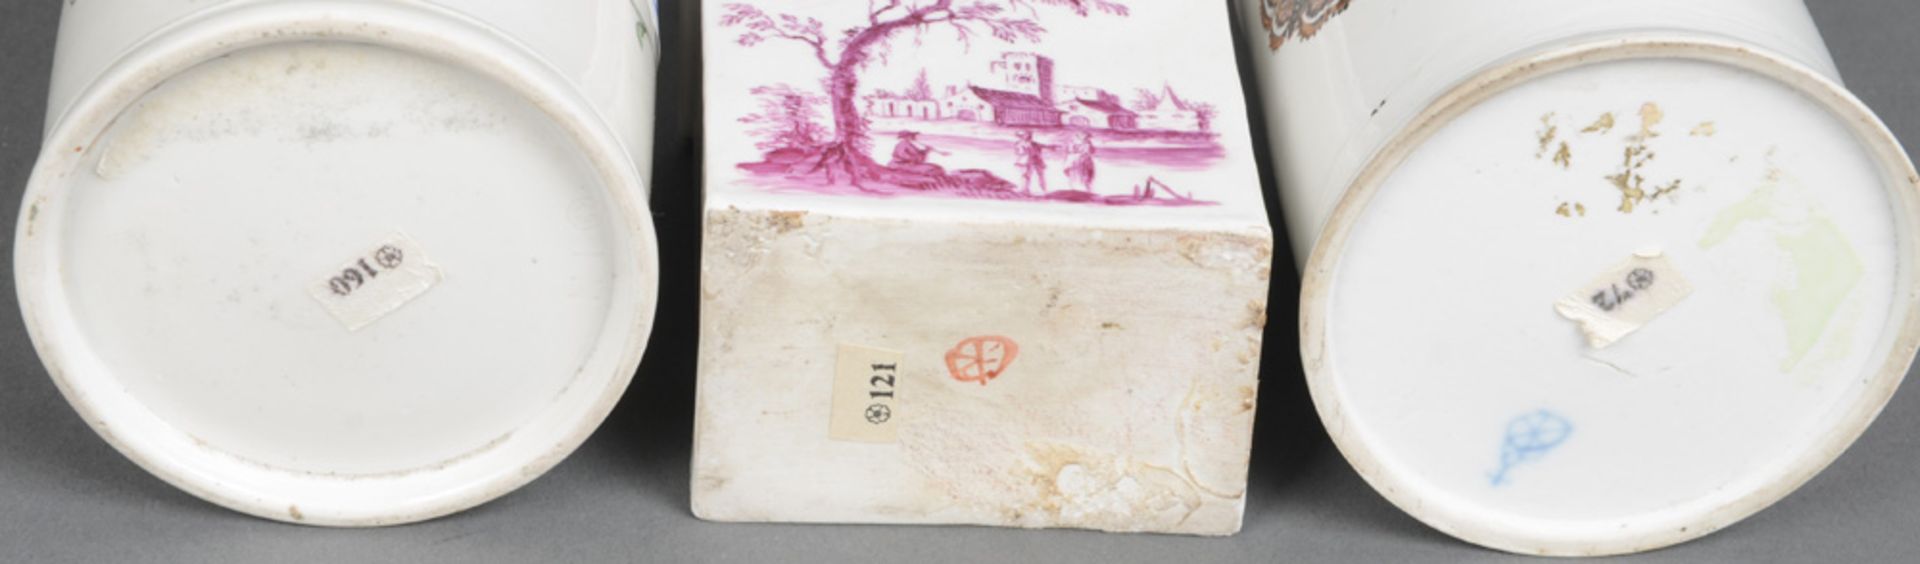 Drei Teedosen. Höchst 1760-70. Porzellan, bunt bzw. purpur bemalt mit Landschaft bzw. Floraldekor. - Image 2 of 2